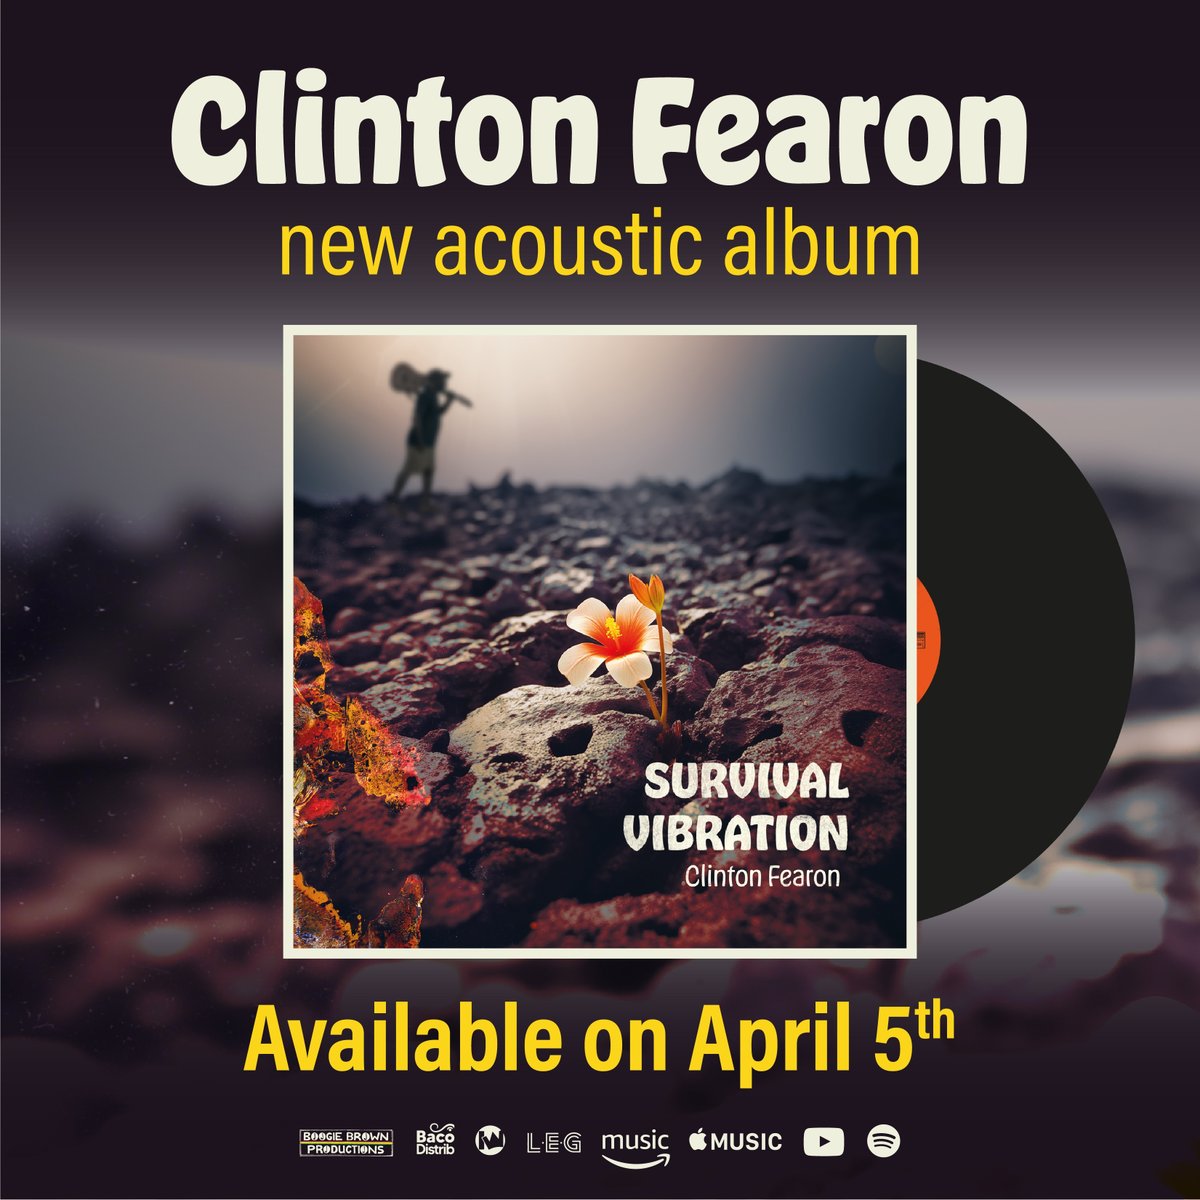 Clinton Fearon's 14th studio album out now on digital platforms + vinyl! Get your digital copy here --->> music.apple.com/us/album/survi… … #reggae #acoustic @clintonfearon #newrelease